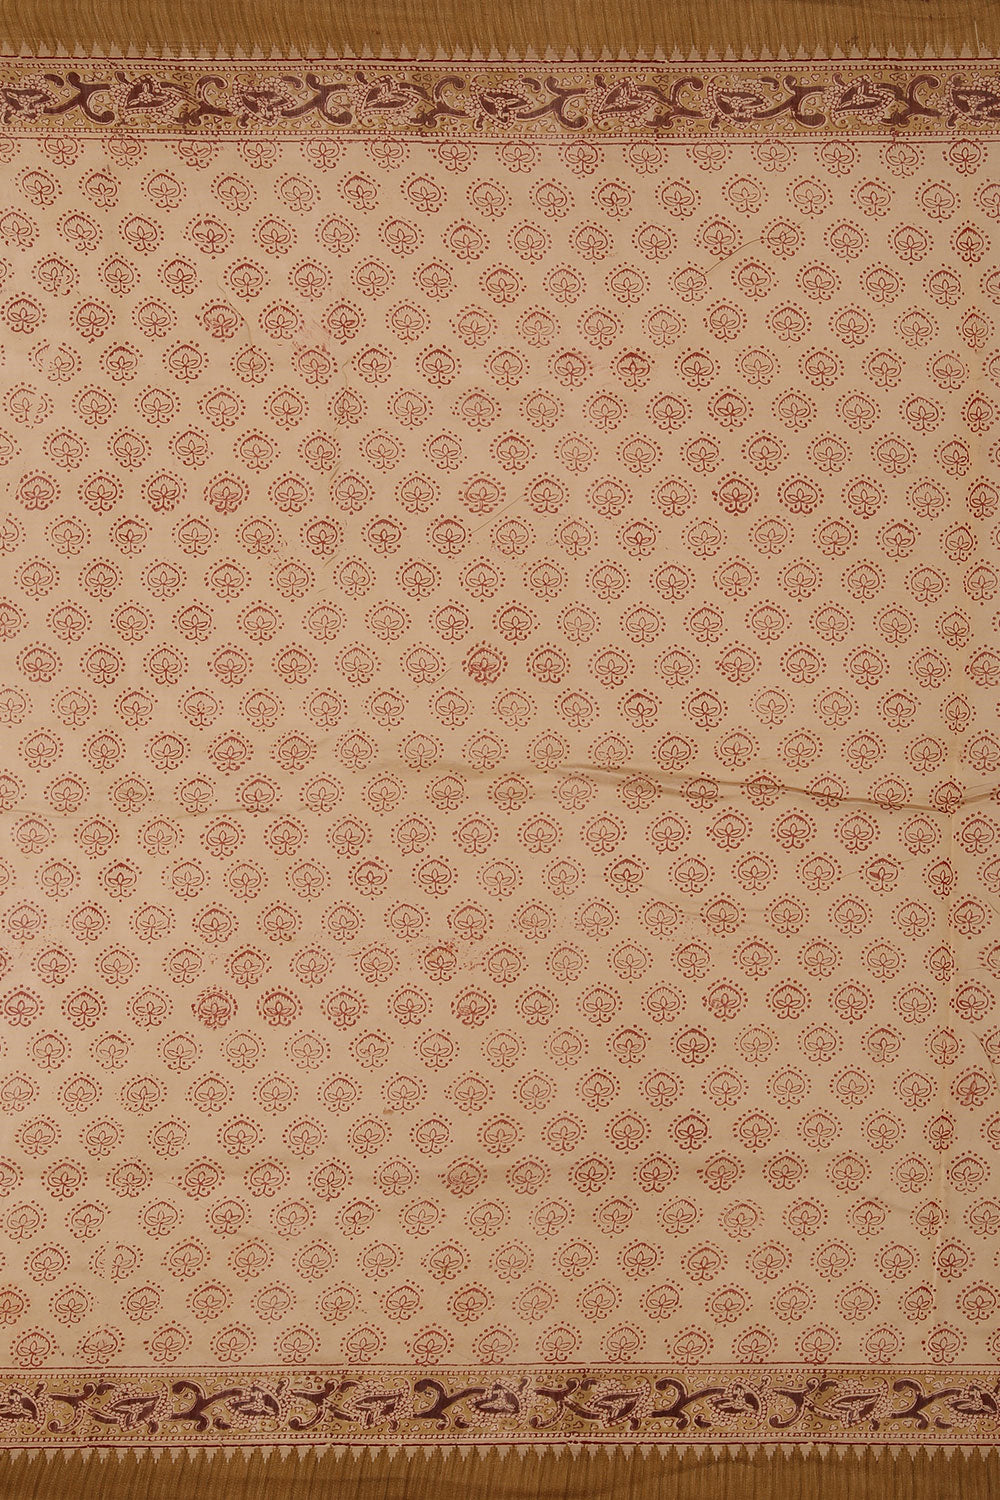 Dark brown Kalamkari handblock printed chanderi saree